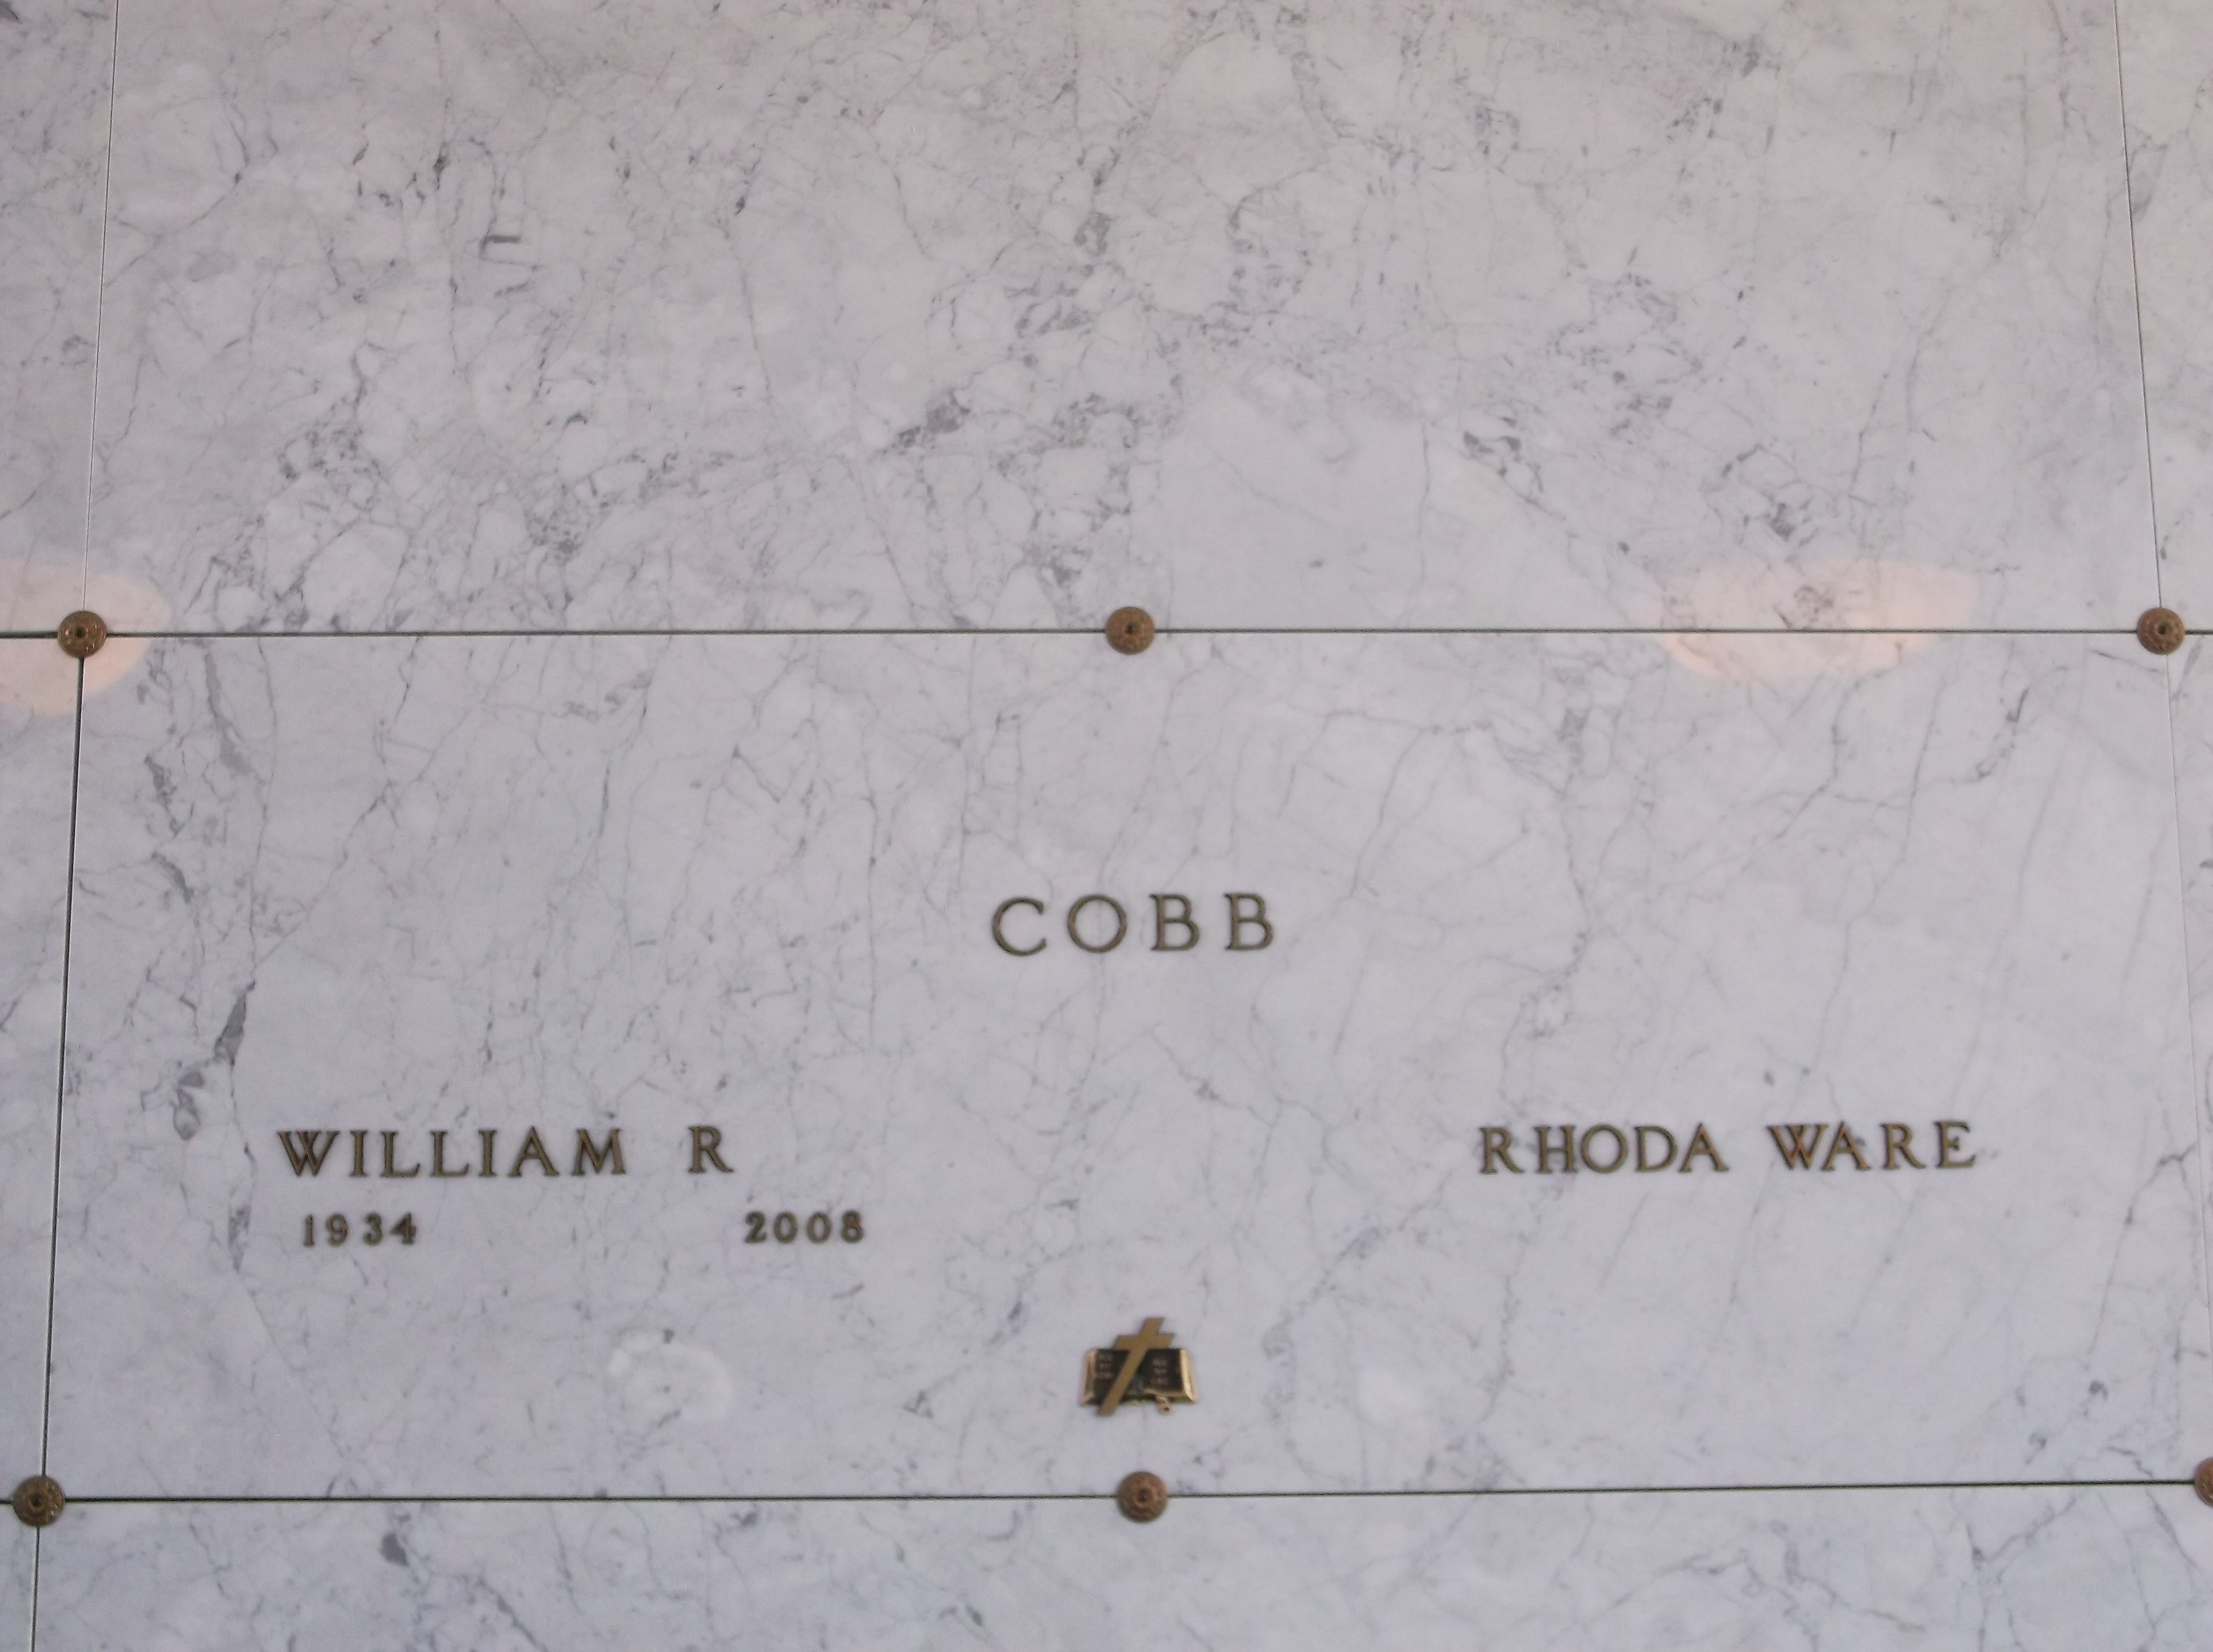 William R Cobb